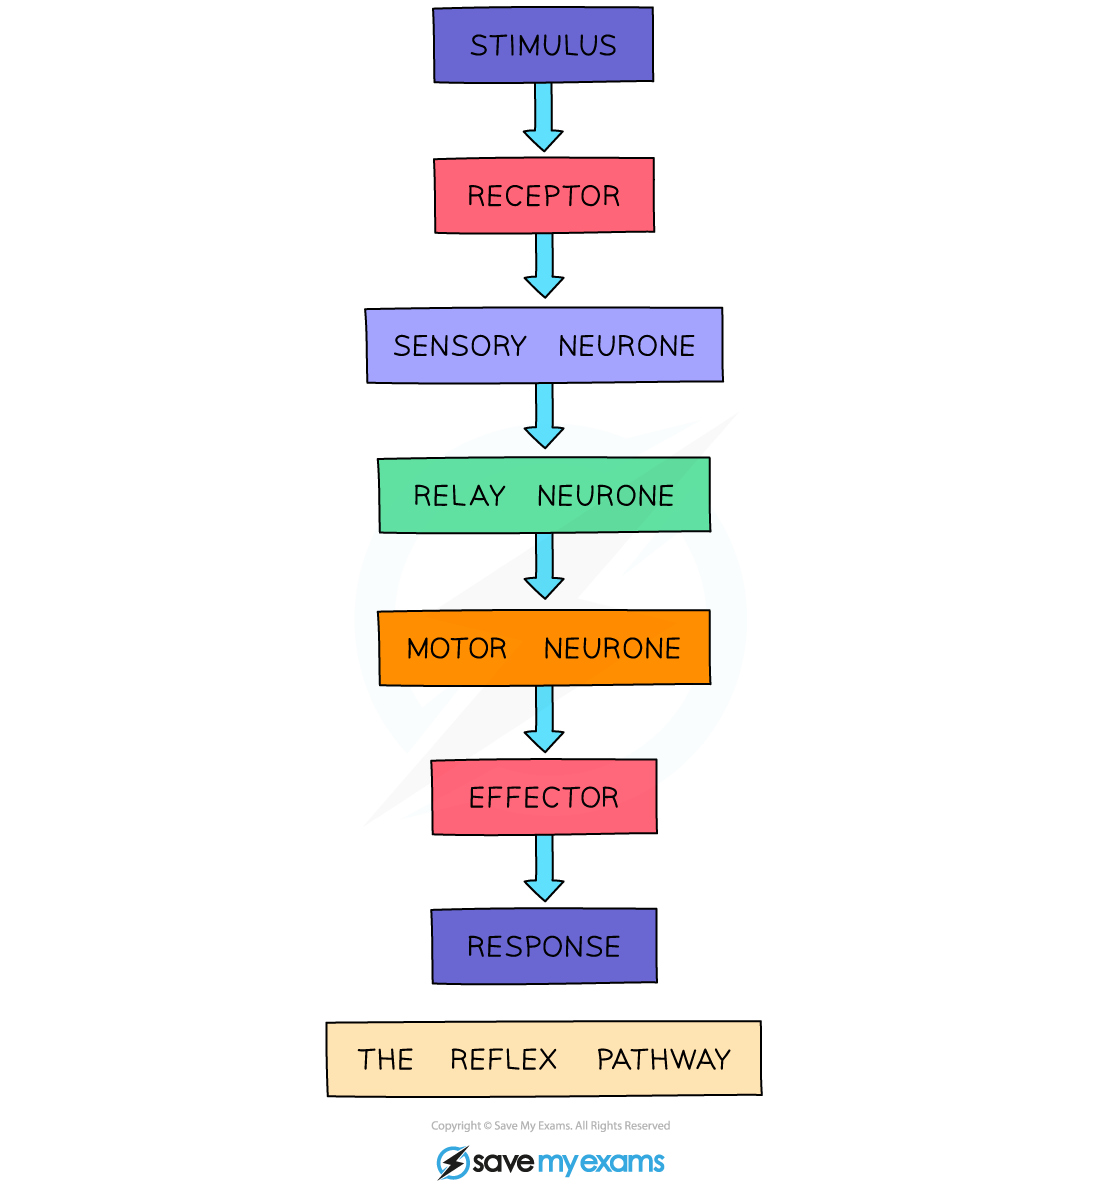 The-reflex-pathway-1